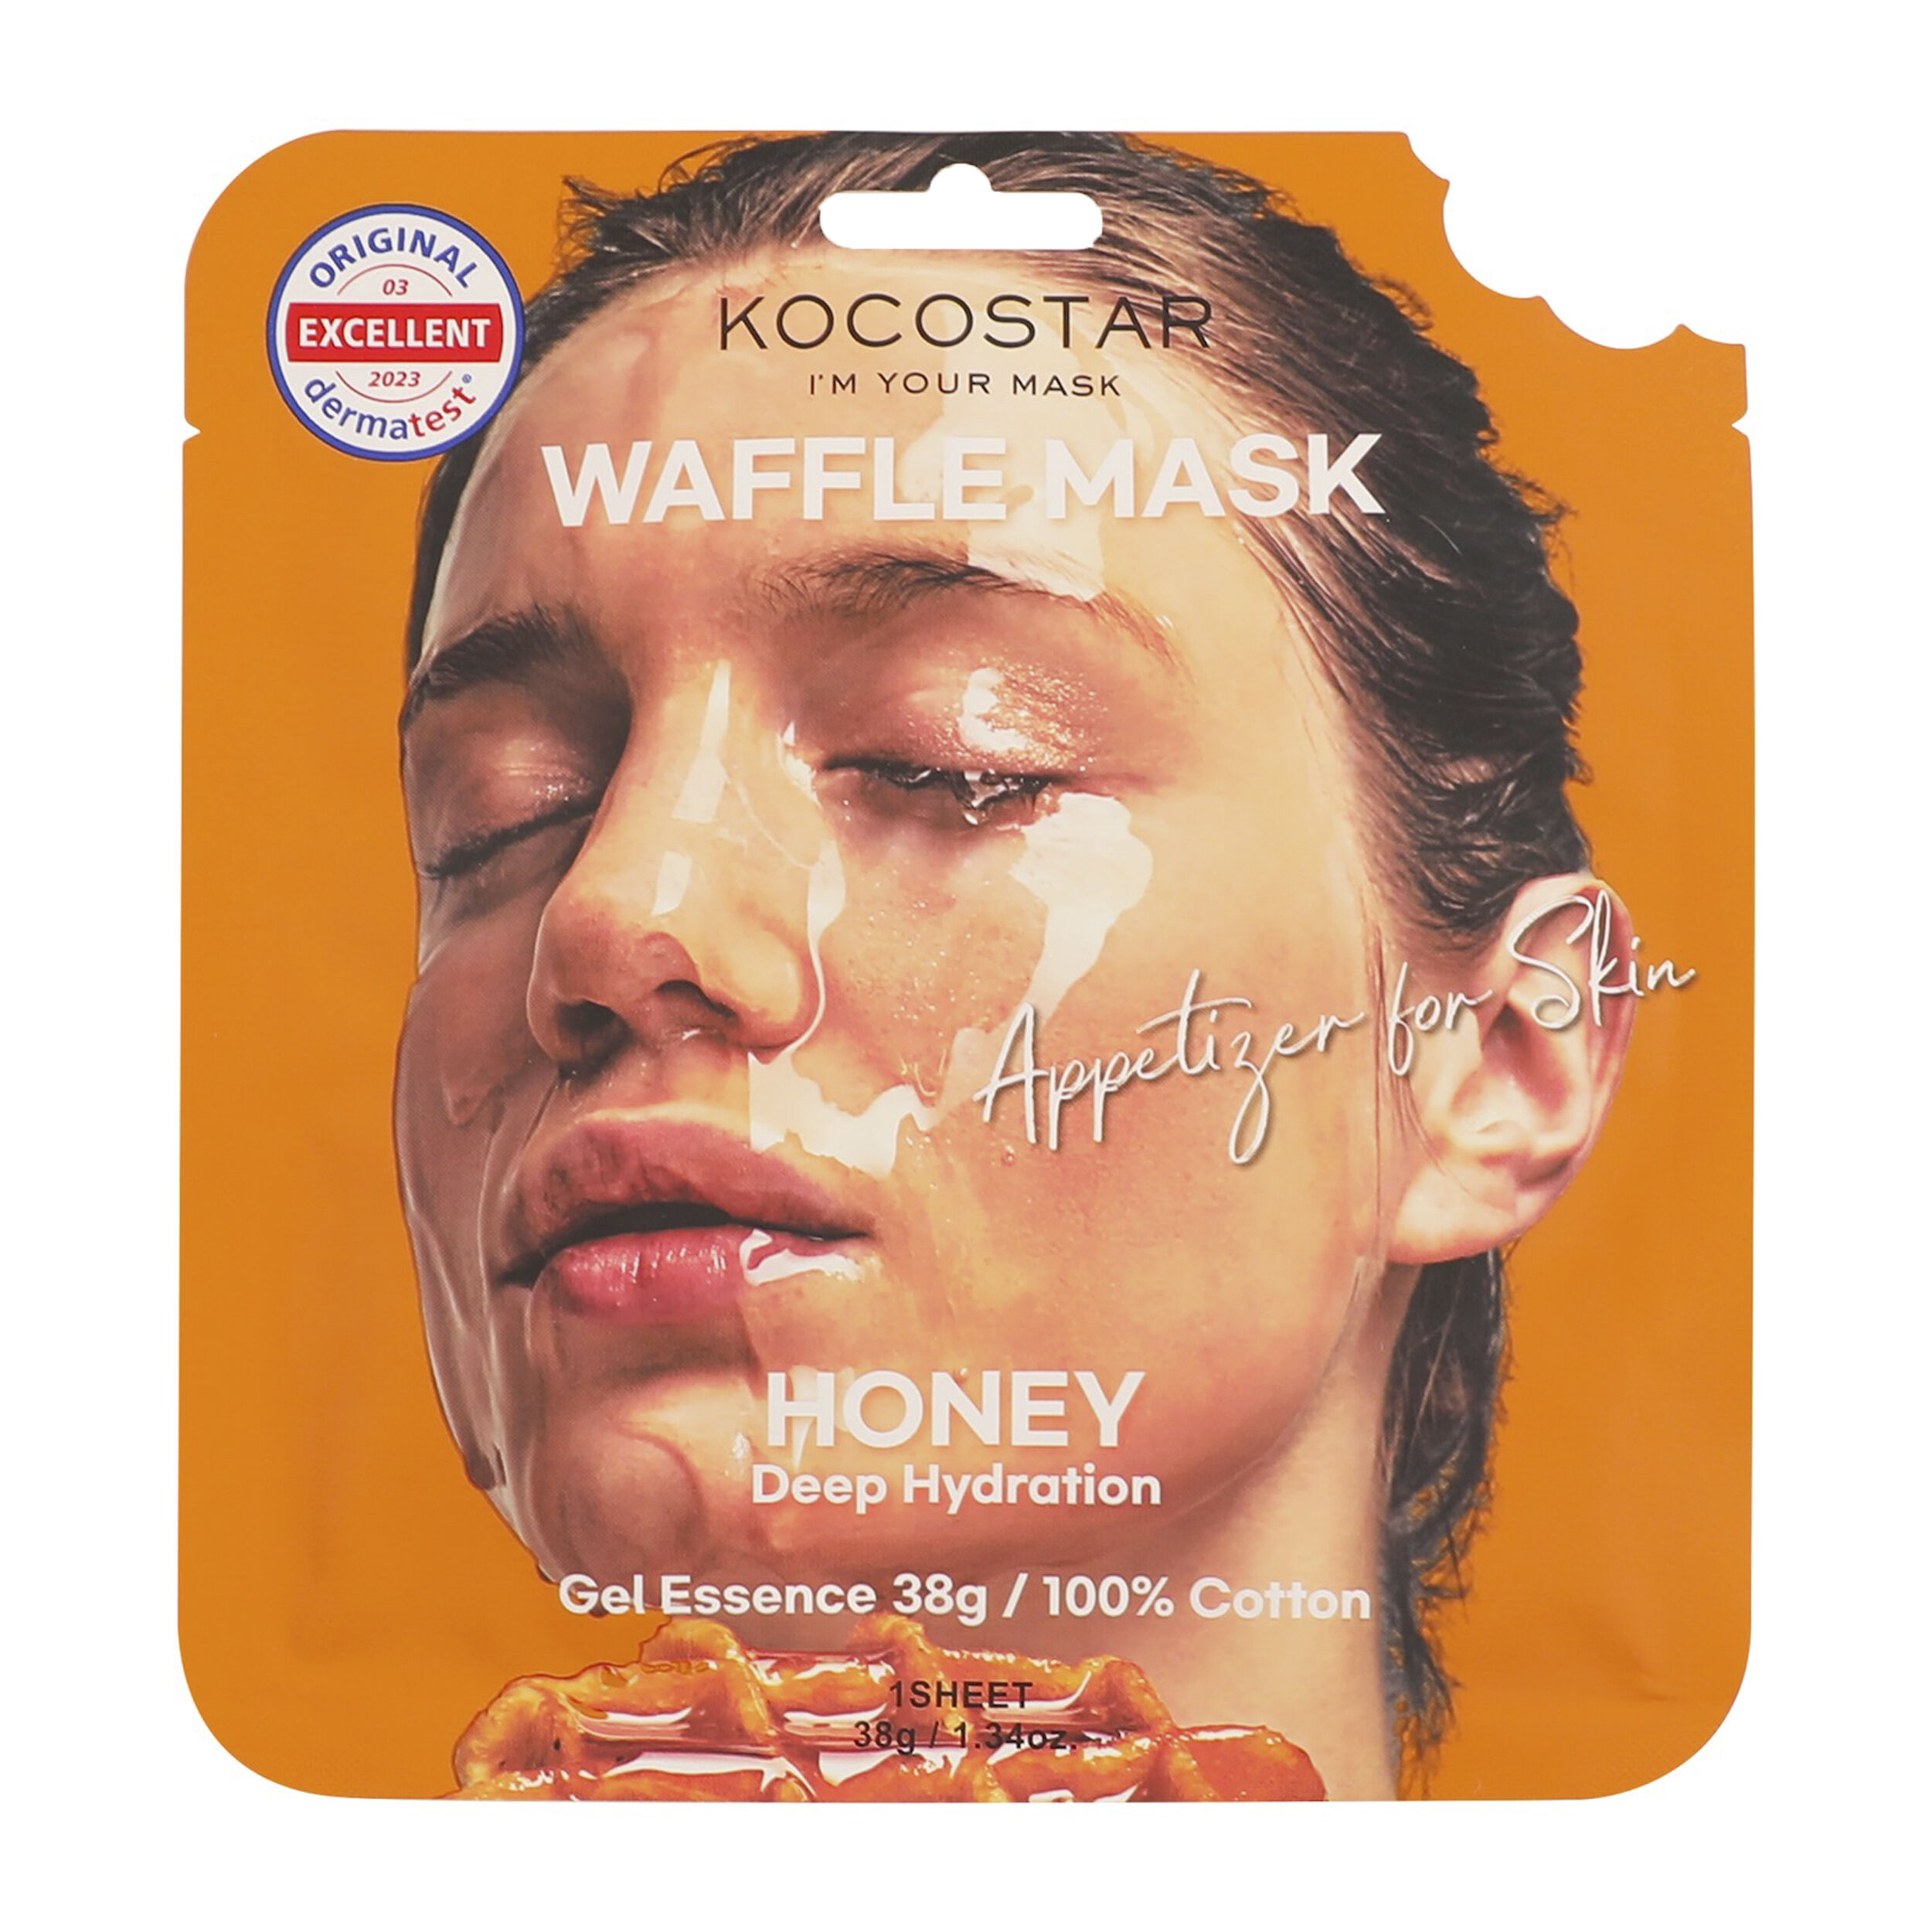 маска для лица kocostar противовоспалительная вафельная маска для лица черничное наслаждение waffle mask blueberry Медовая маска для лица Kocostar Waffle Mask, 38 гр